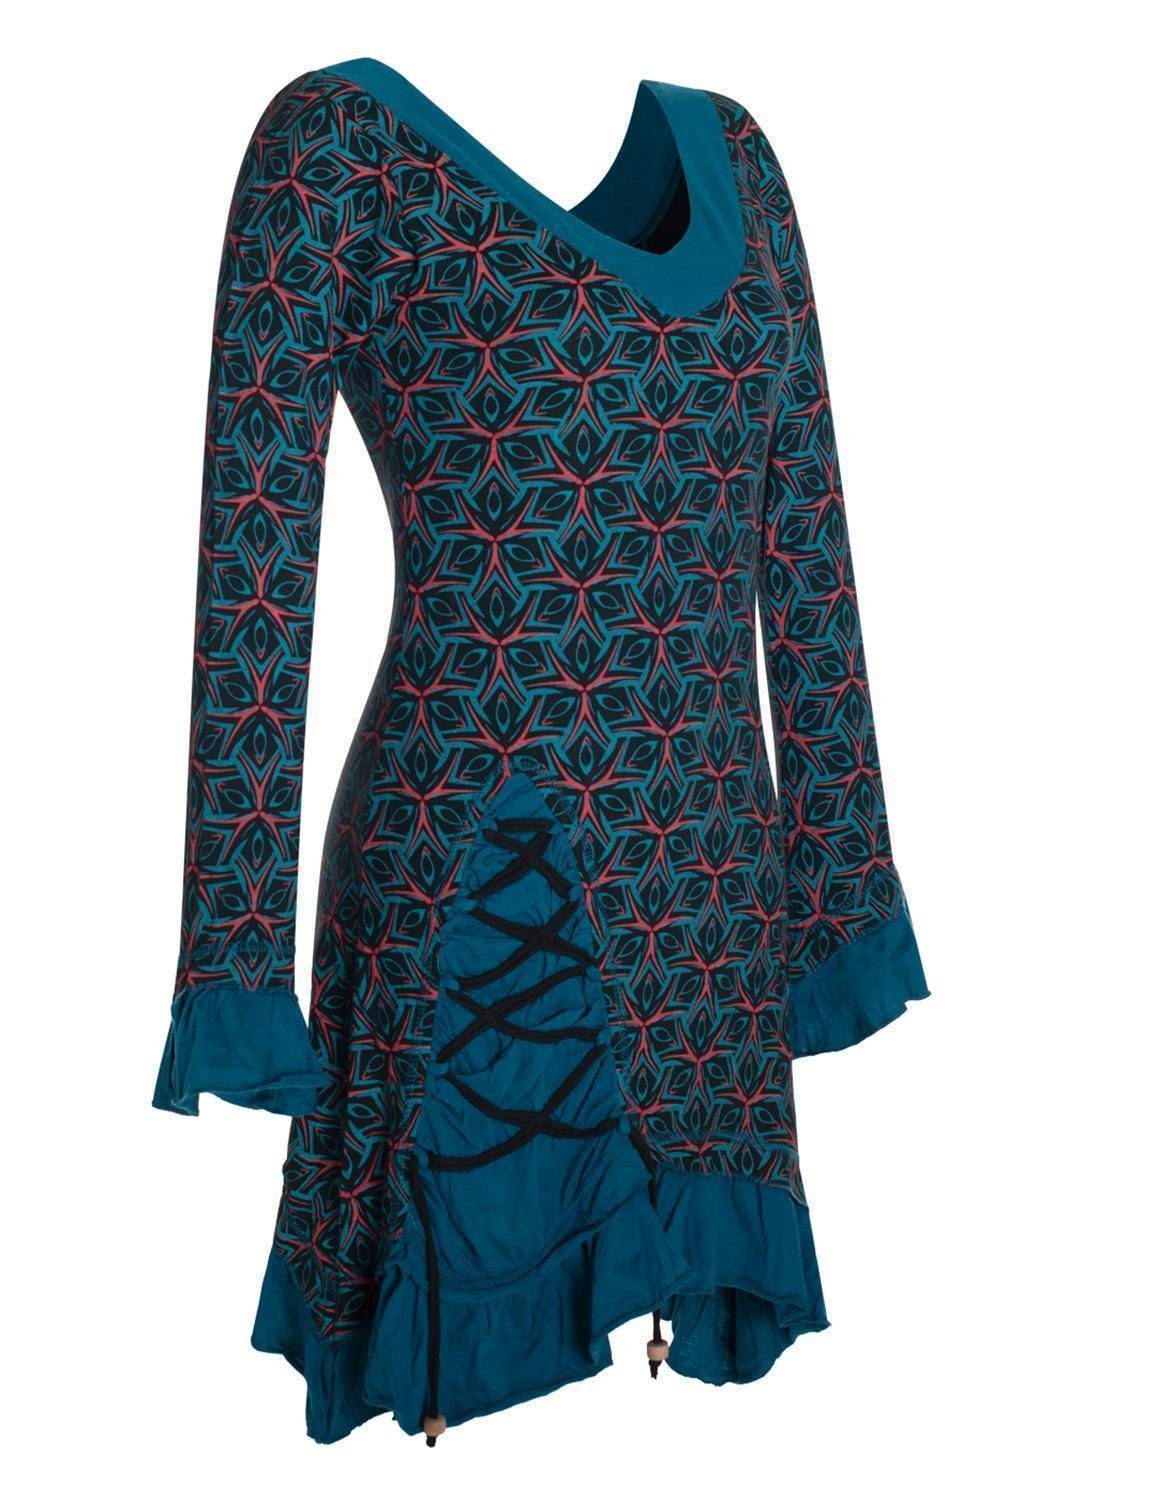 Vishes Zipfelkleid Langarm Kleid Bedruckt Asymmetrisch Rüschen Volant Elfen, Hippie, Festkleid schwarz